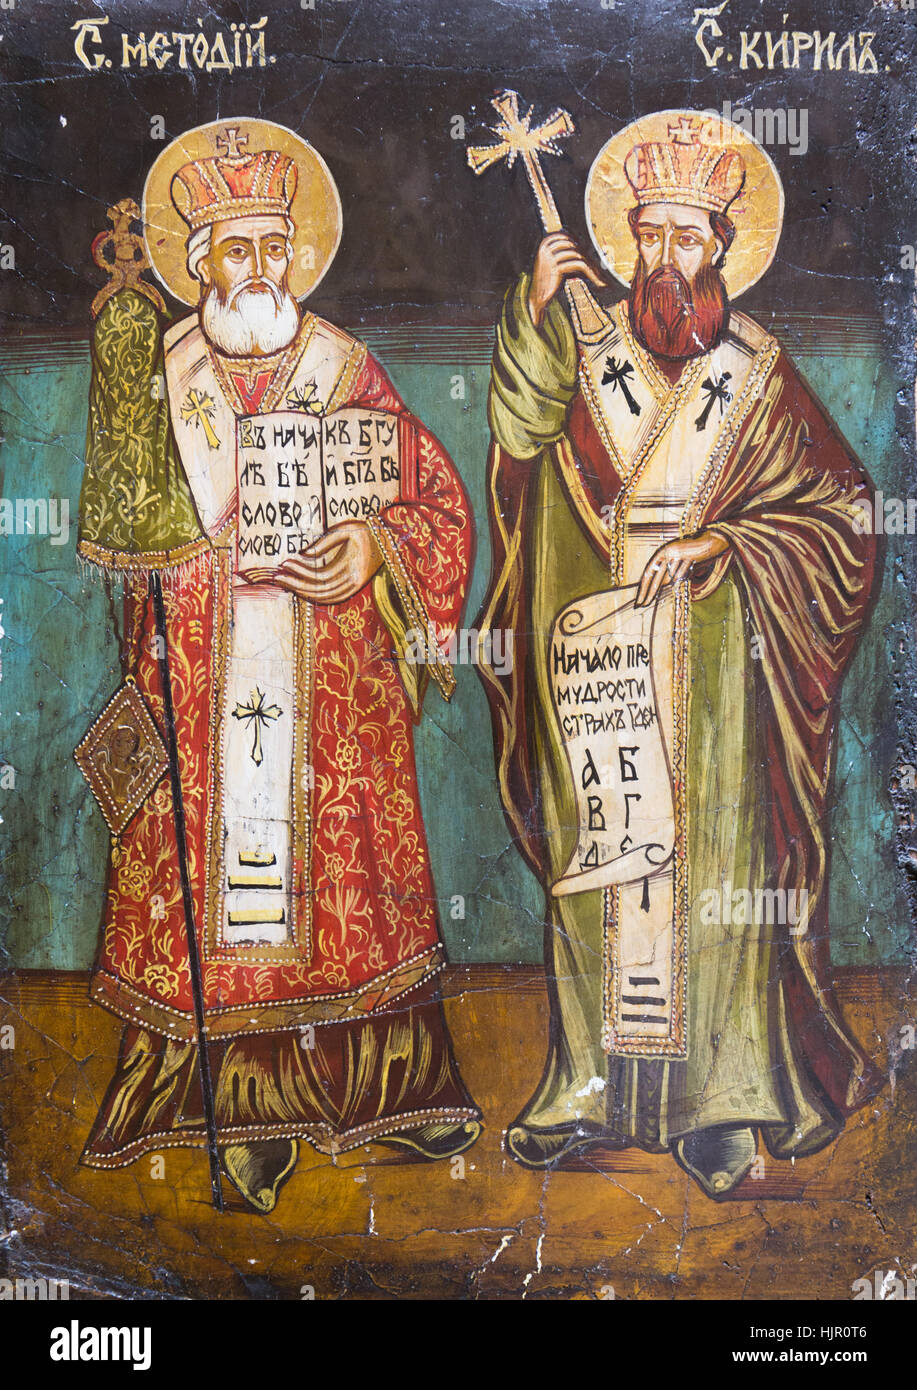 Icono bizantino de los santos Cirilo y Metodio, los dos hermanos que eran misioneros bizantinos, los 'Apóstoles de los eslavos'. Foto de stock